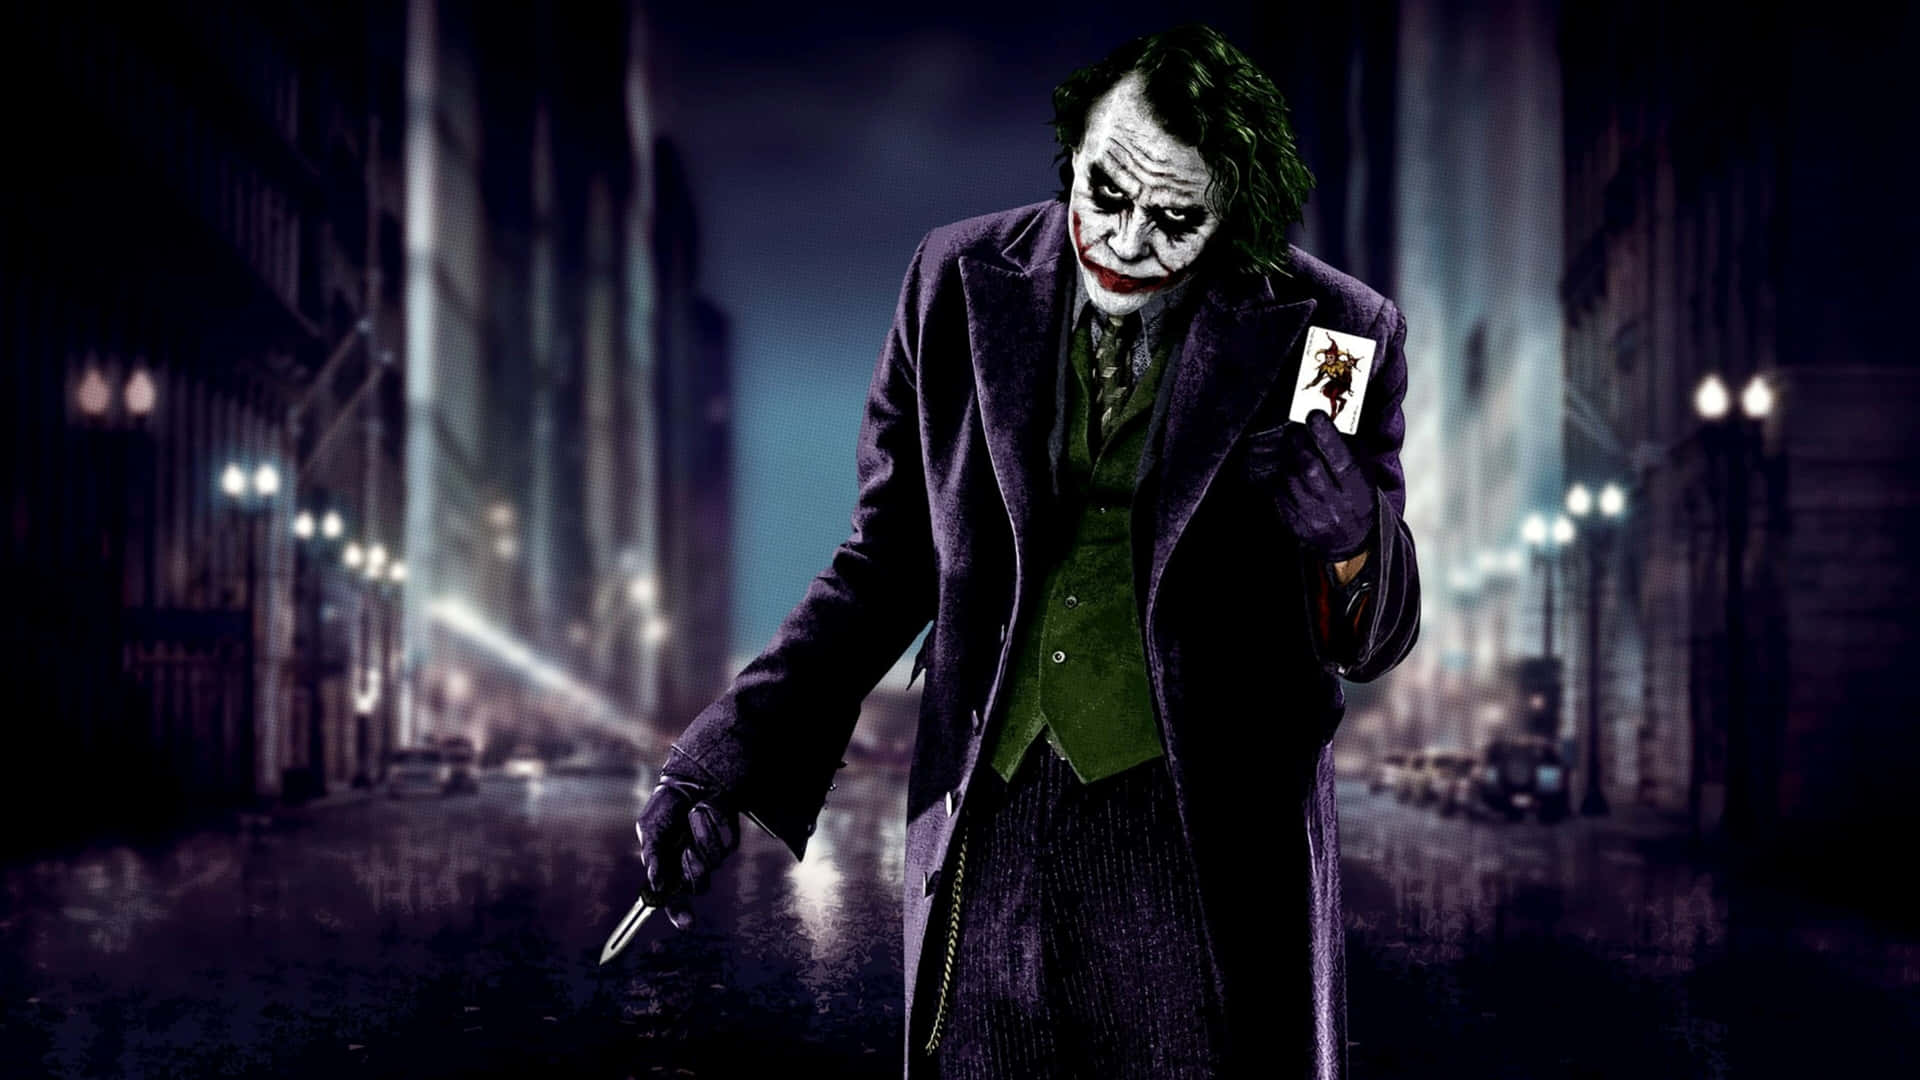 Darkknight Joker In 4k Ultra Hd Spaziert Durch Die Stadt Wallpaper